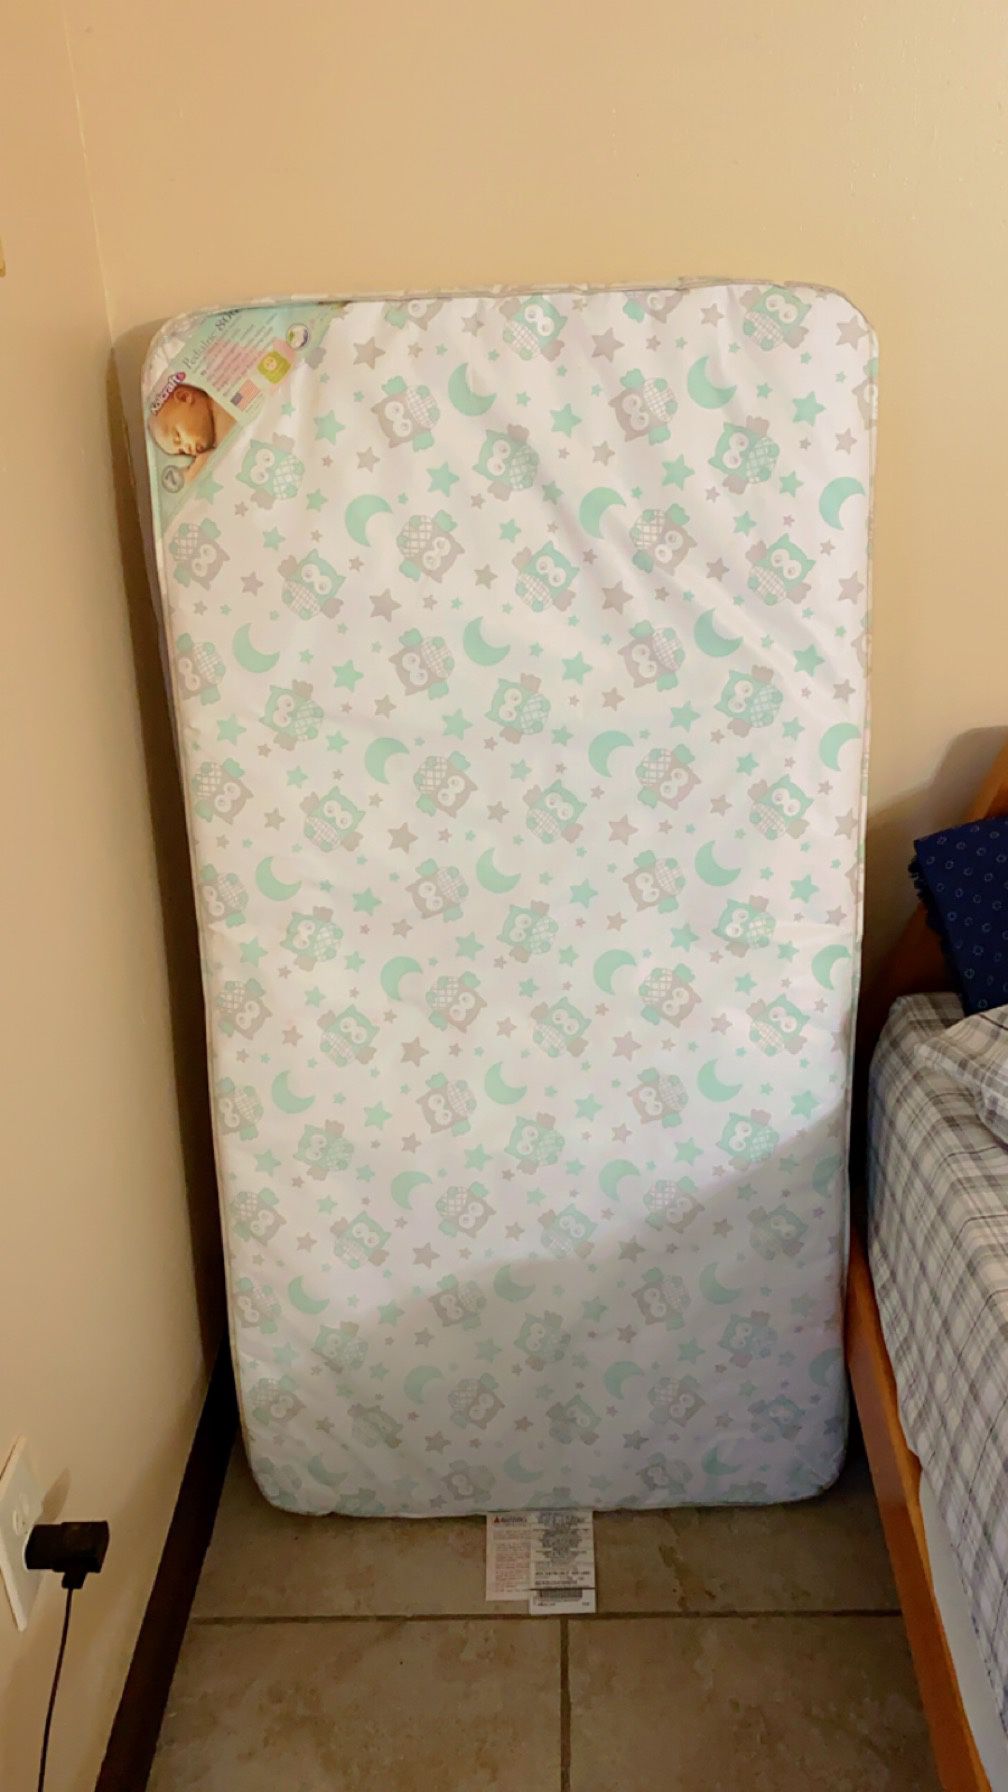 Crib/toddler Bed Mattress 